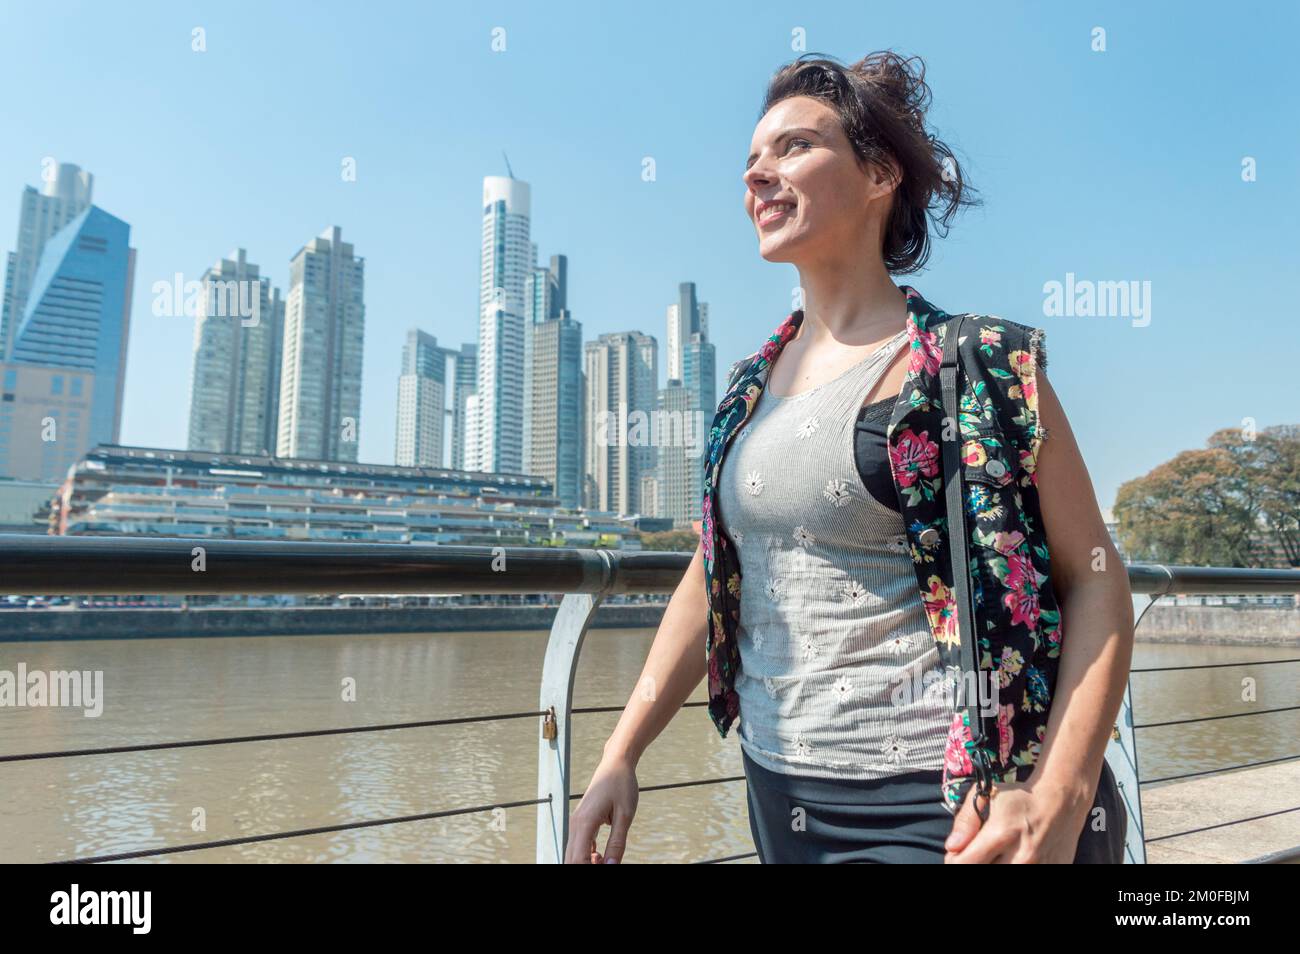 Femme heureuse d'adulte caucasien, est souriante et marche à travers la ville de Buenos Aires, avec des bâtiments dans l'arrière-plan et l'espace de copie. Banque D'Images